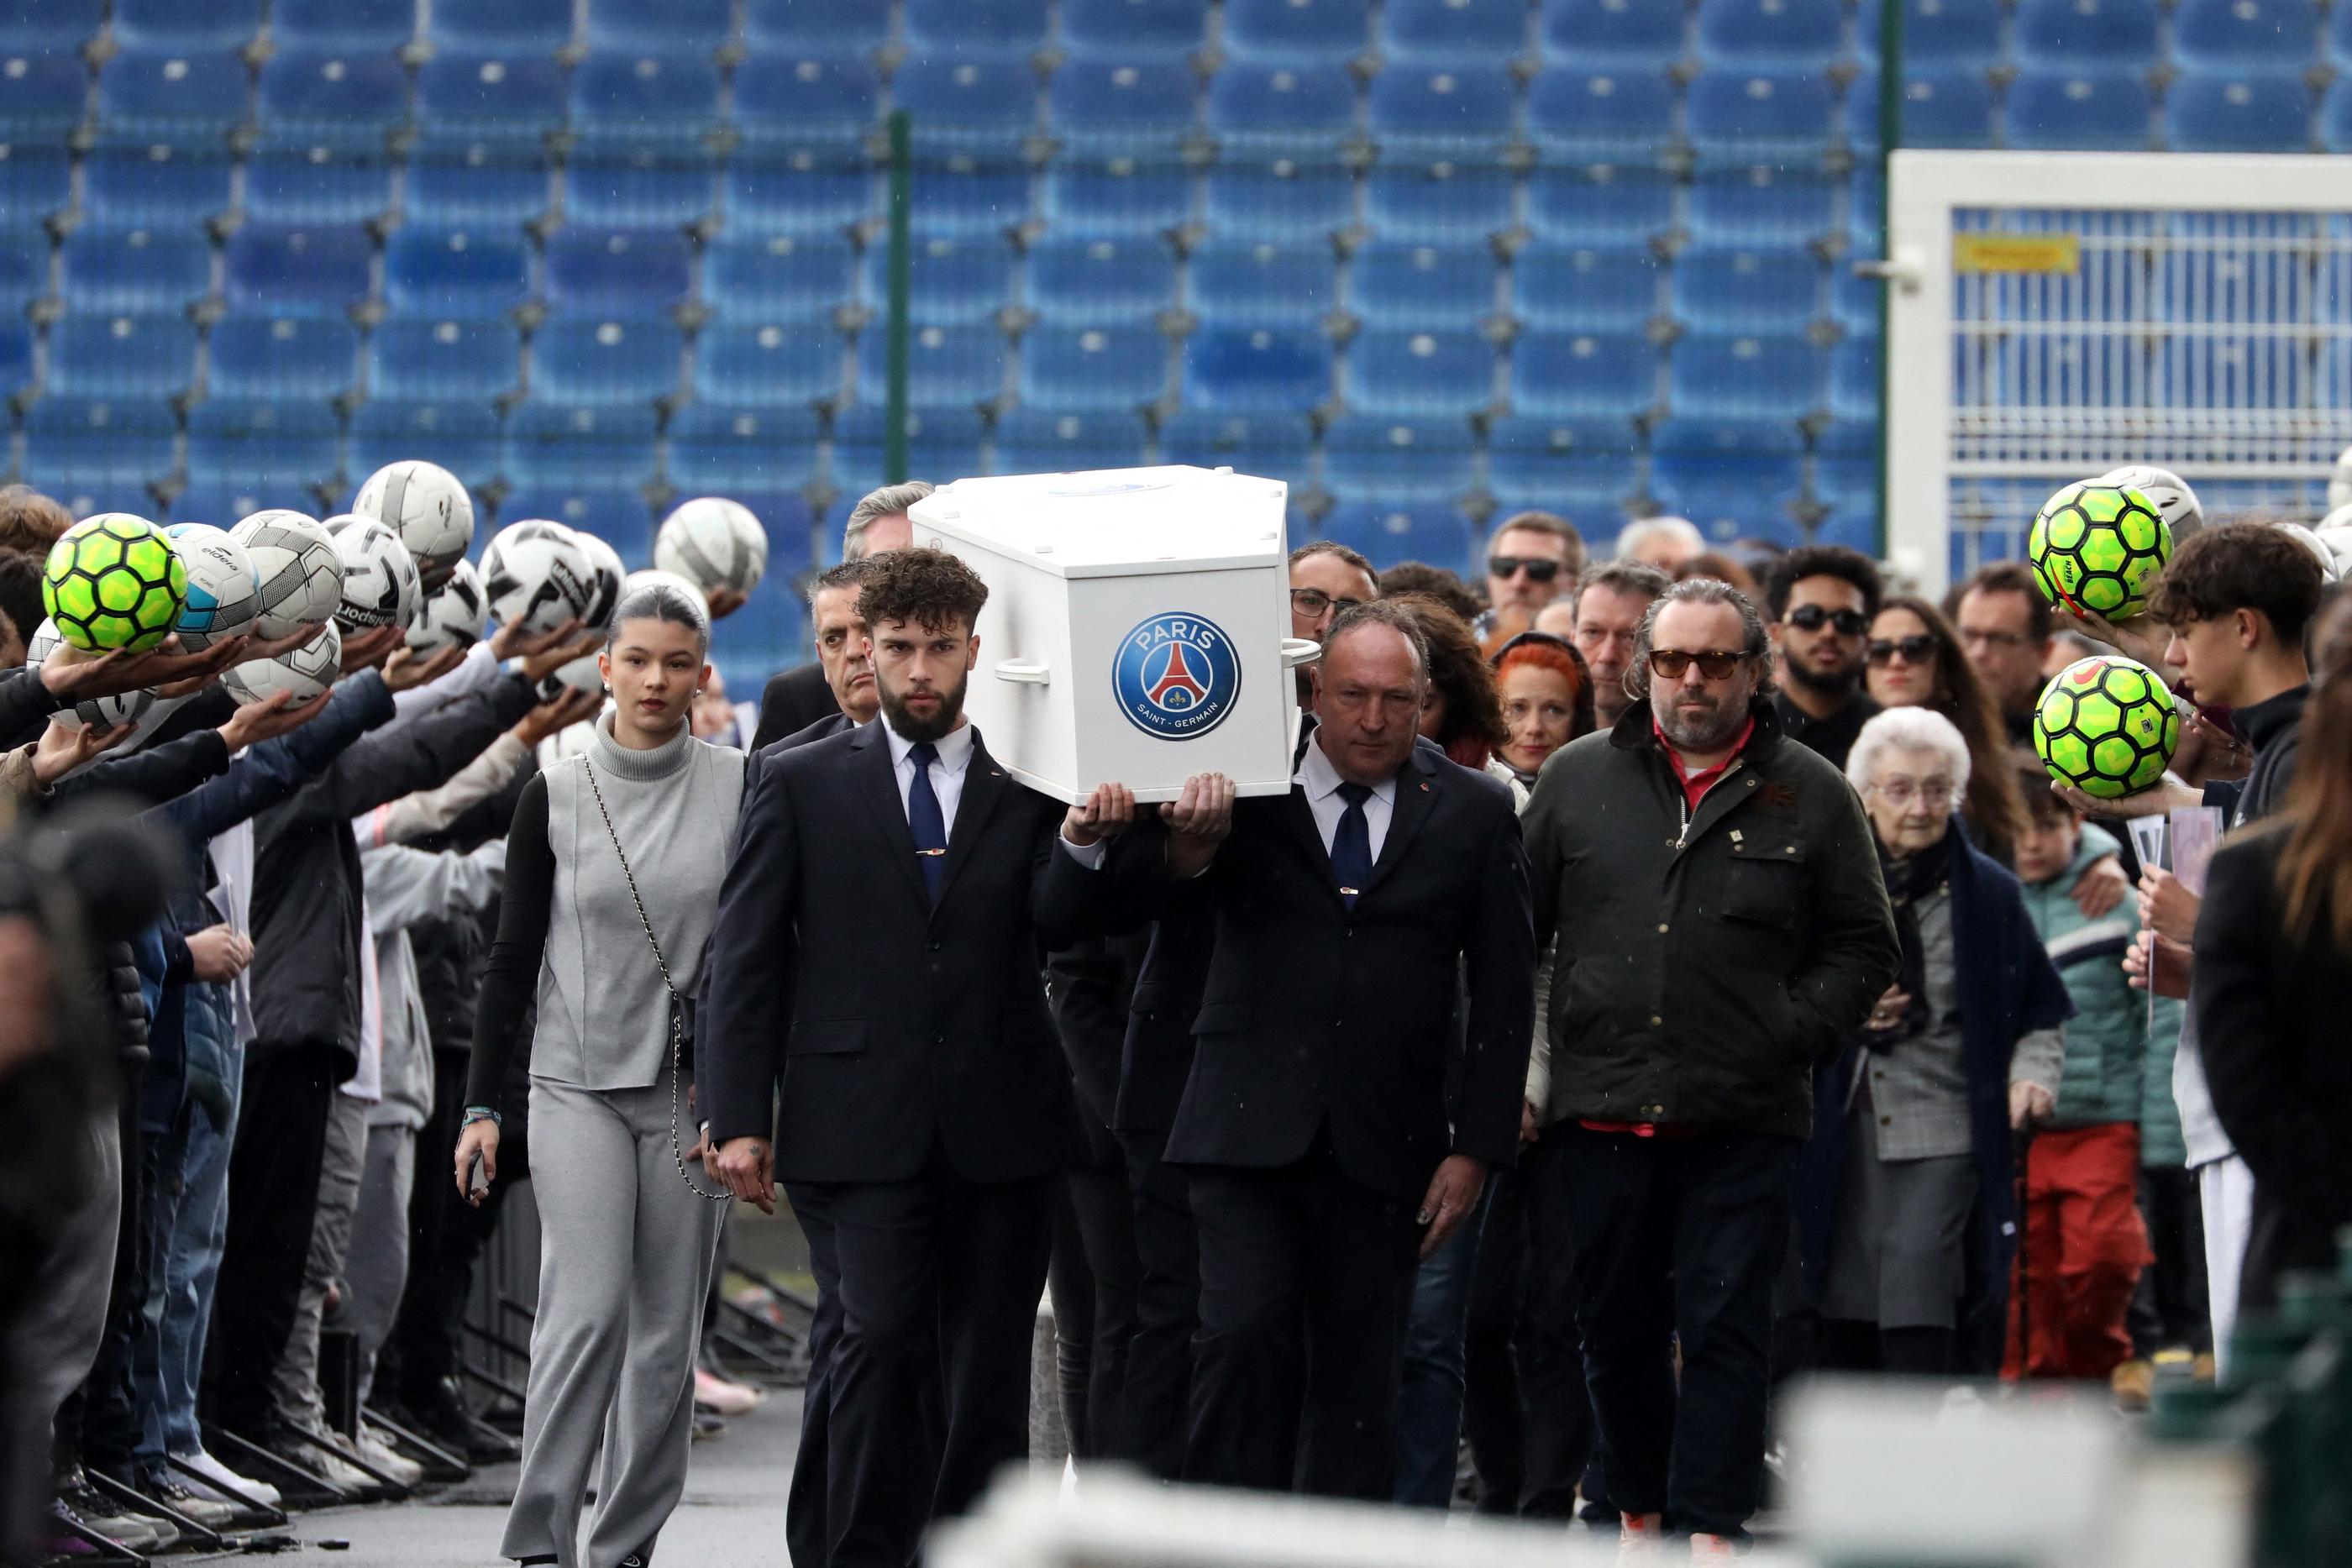 Le cercueil et les proches de Matisse ont quitté le stade sous les applaudissements et dans la fumée bleu-blanc-rouge de fumigènes. PhotoPQR/La Nouvelle République/Trouilliaud